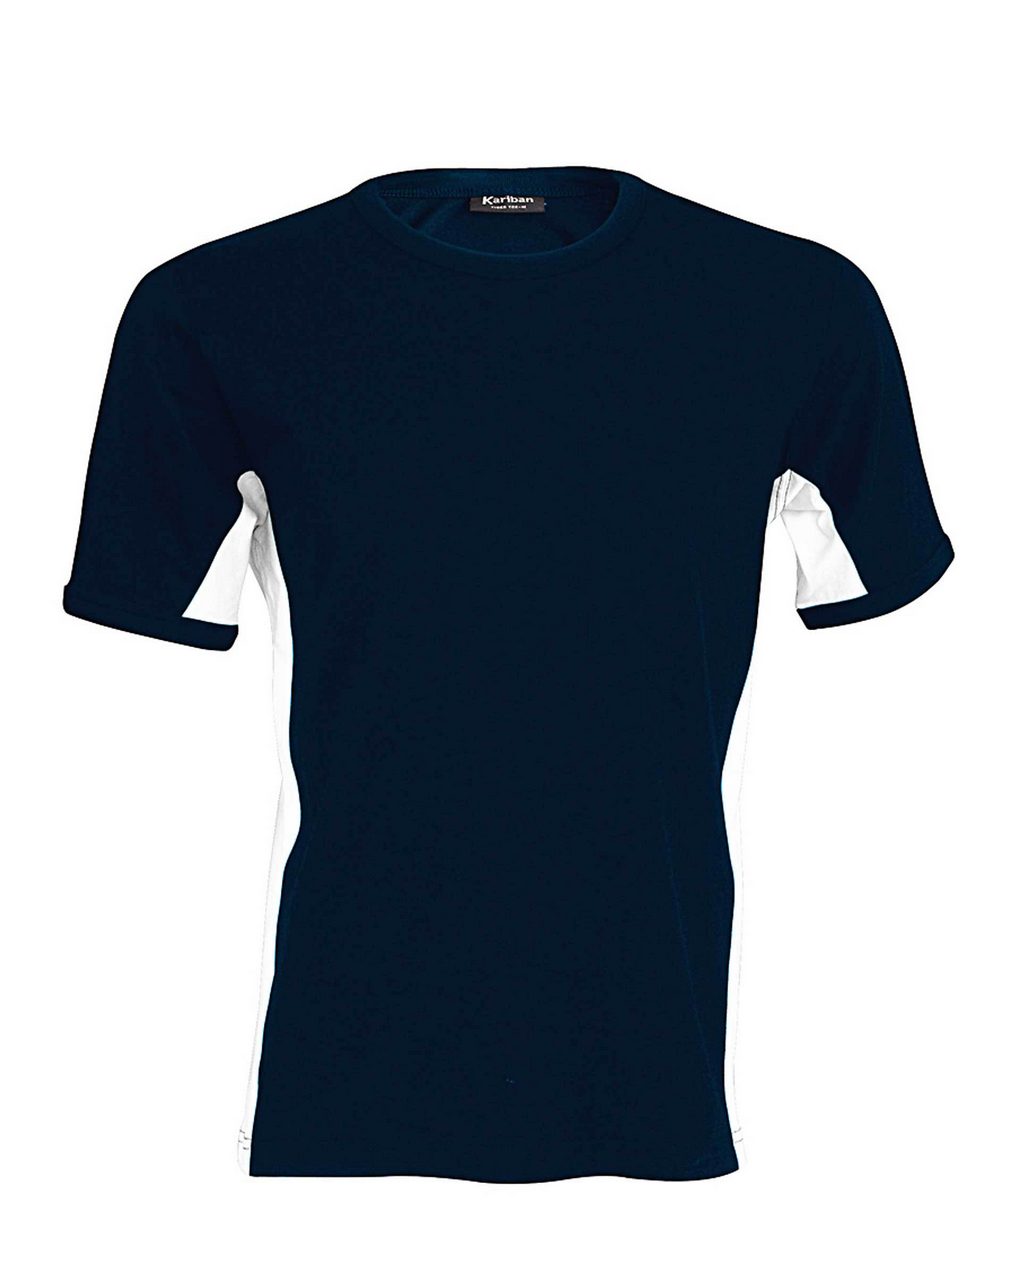 Kariban Herren T-Shirt Streifen Kontrast zweifarbig Kurzarm Oberteil